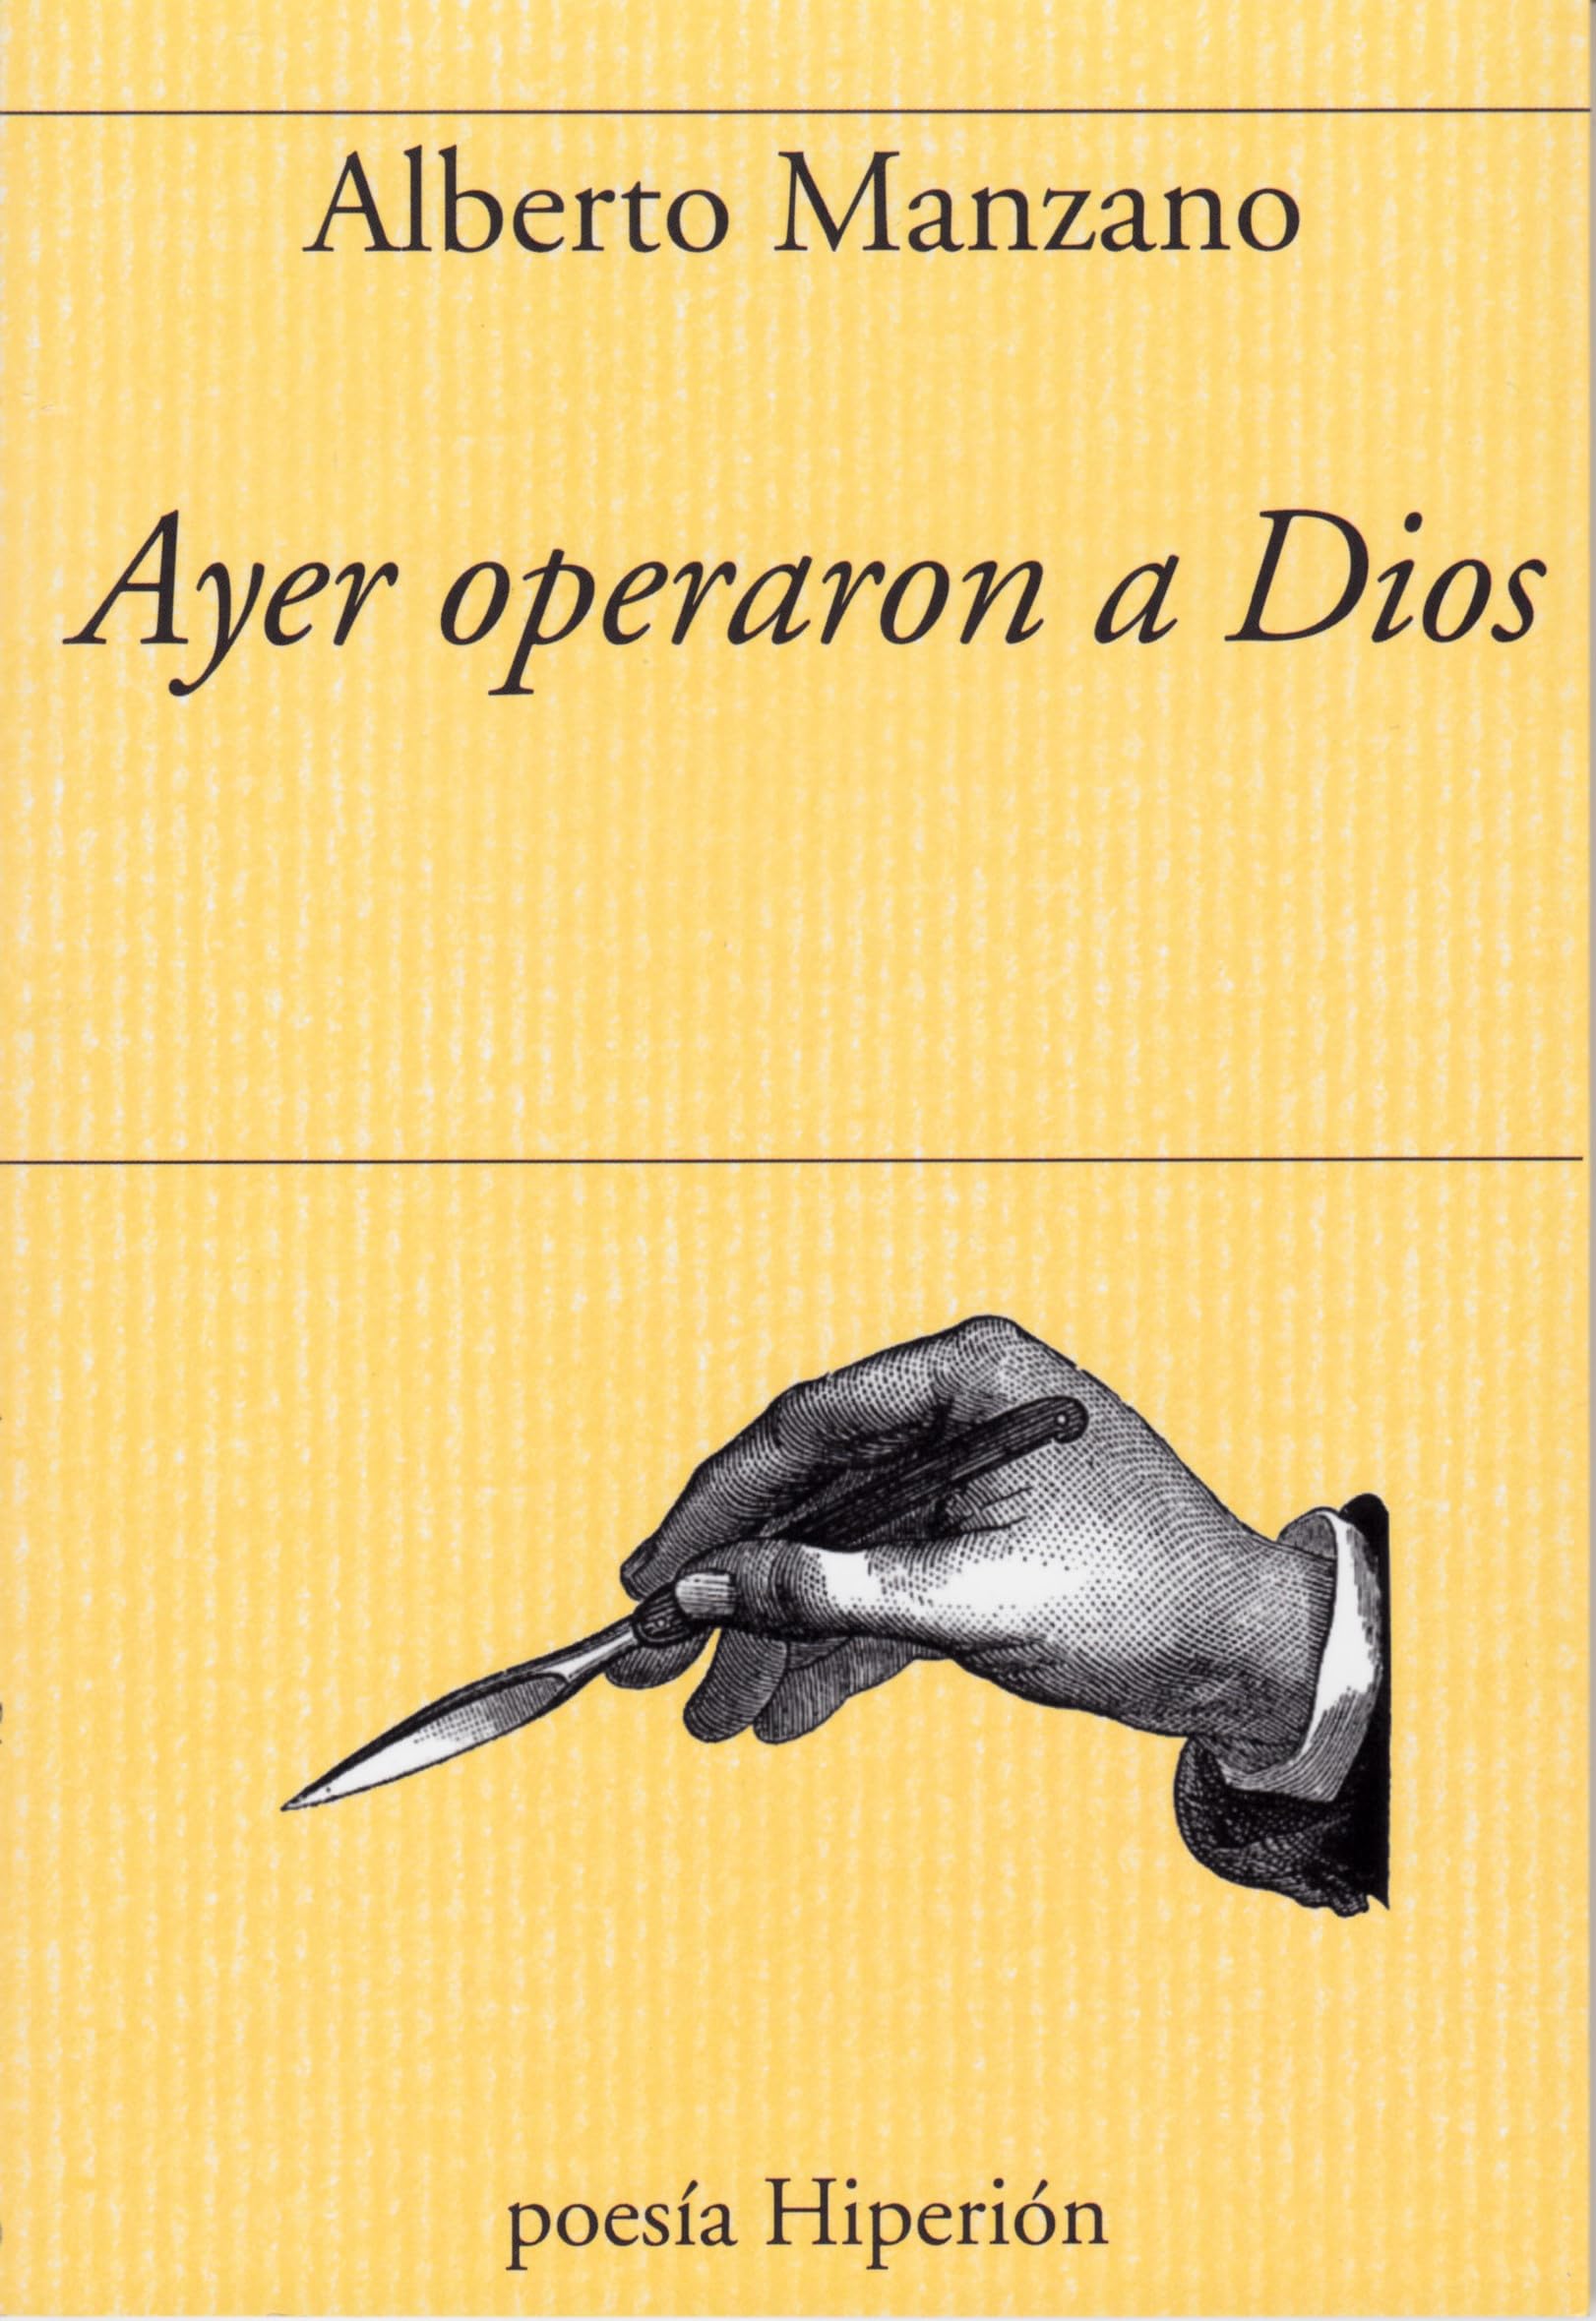 5 poemas de Ayer operaron a Dios, de Alberto Manzano